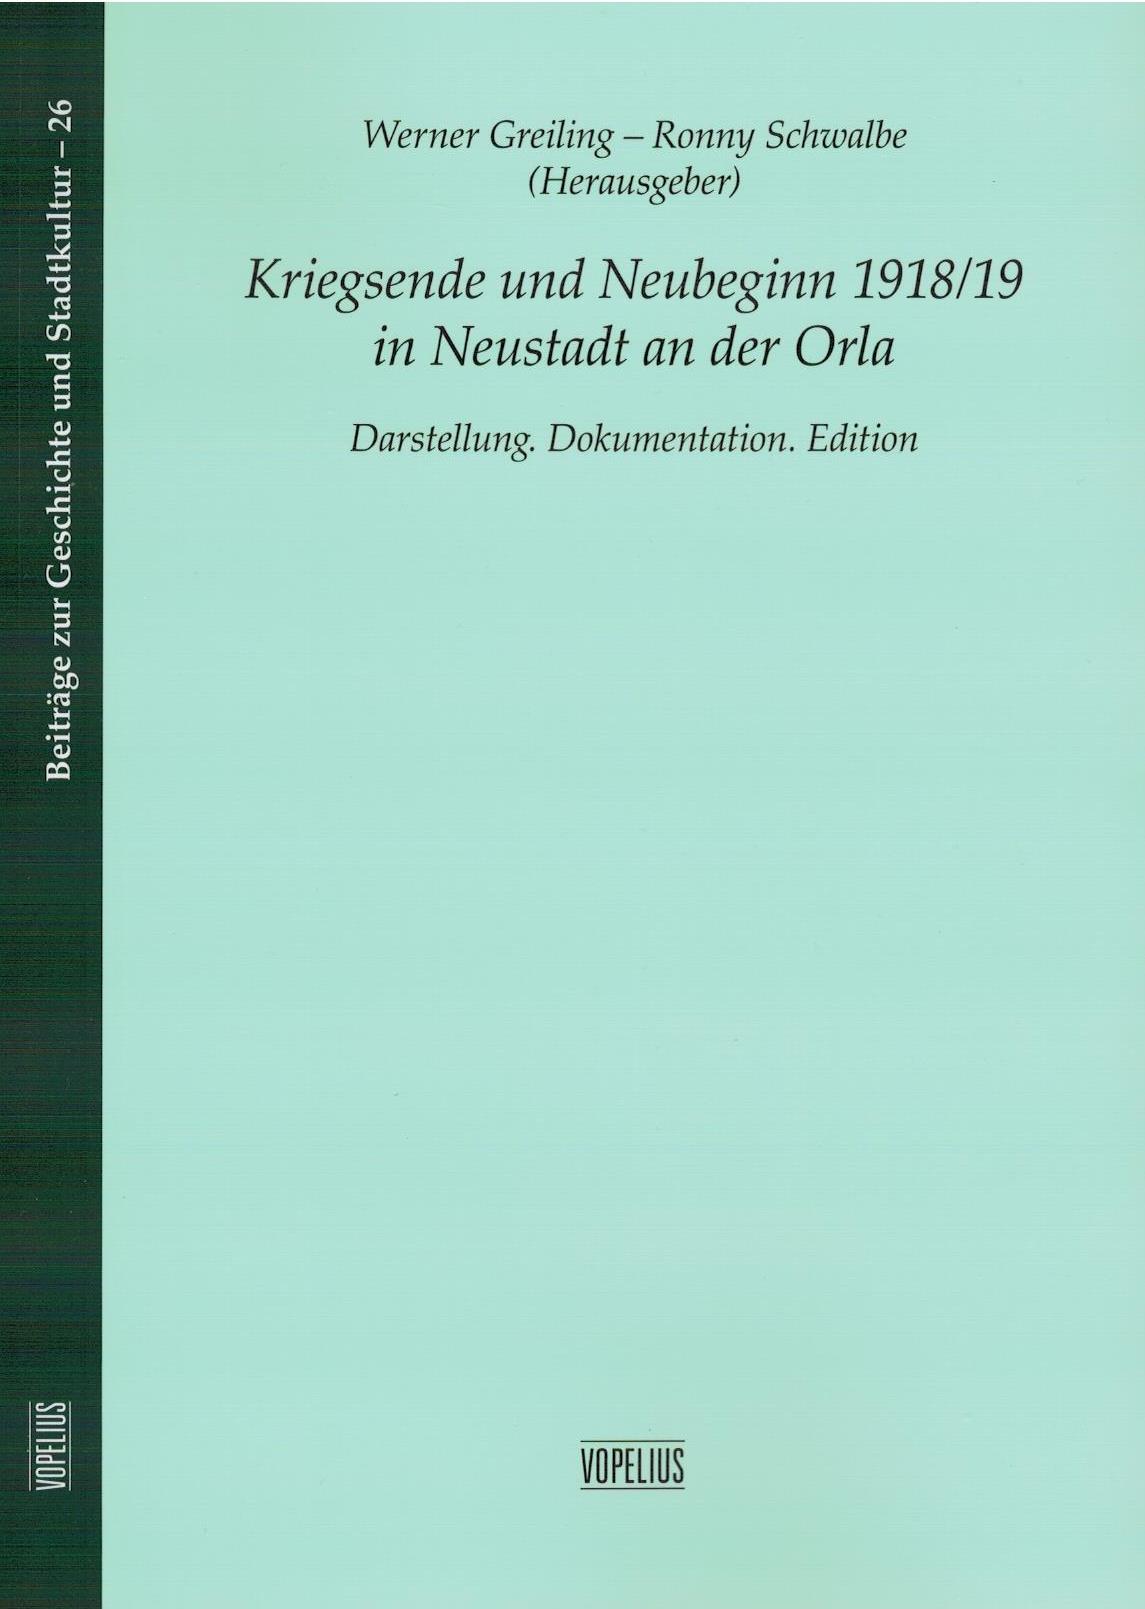 Kriegsende und Neubeginn 1918/19 in Neustadt an der Orla, Darstellung. Dokumentation. - Band 26